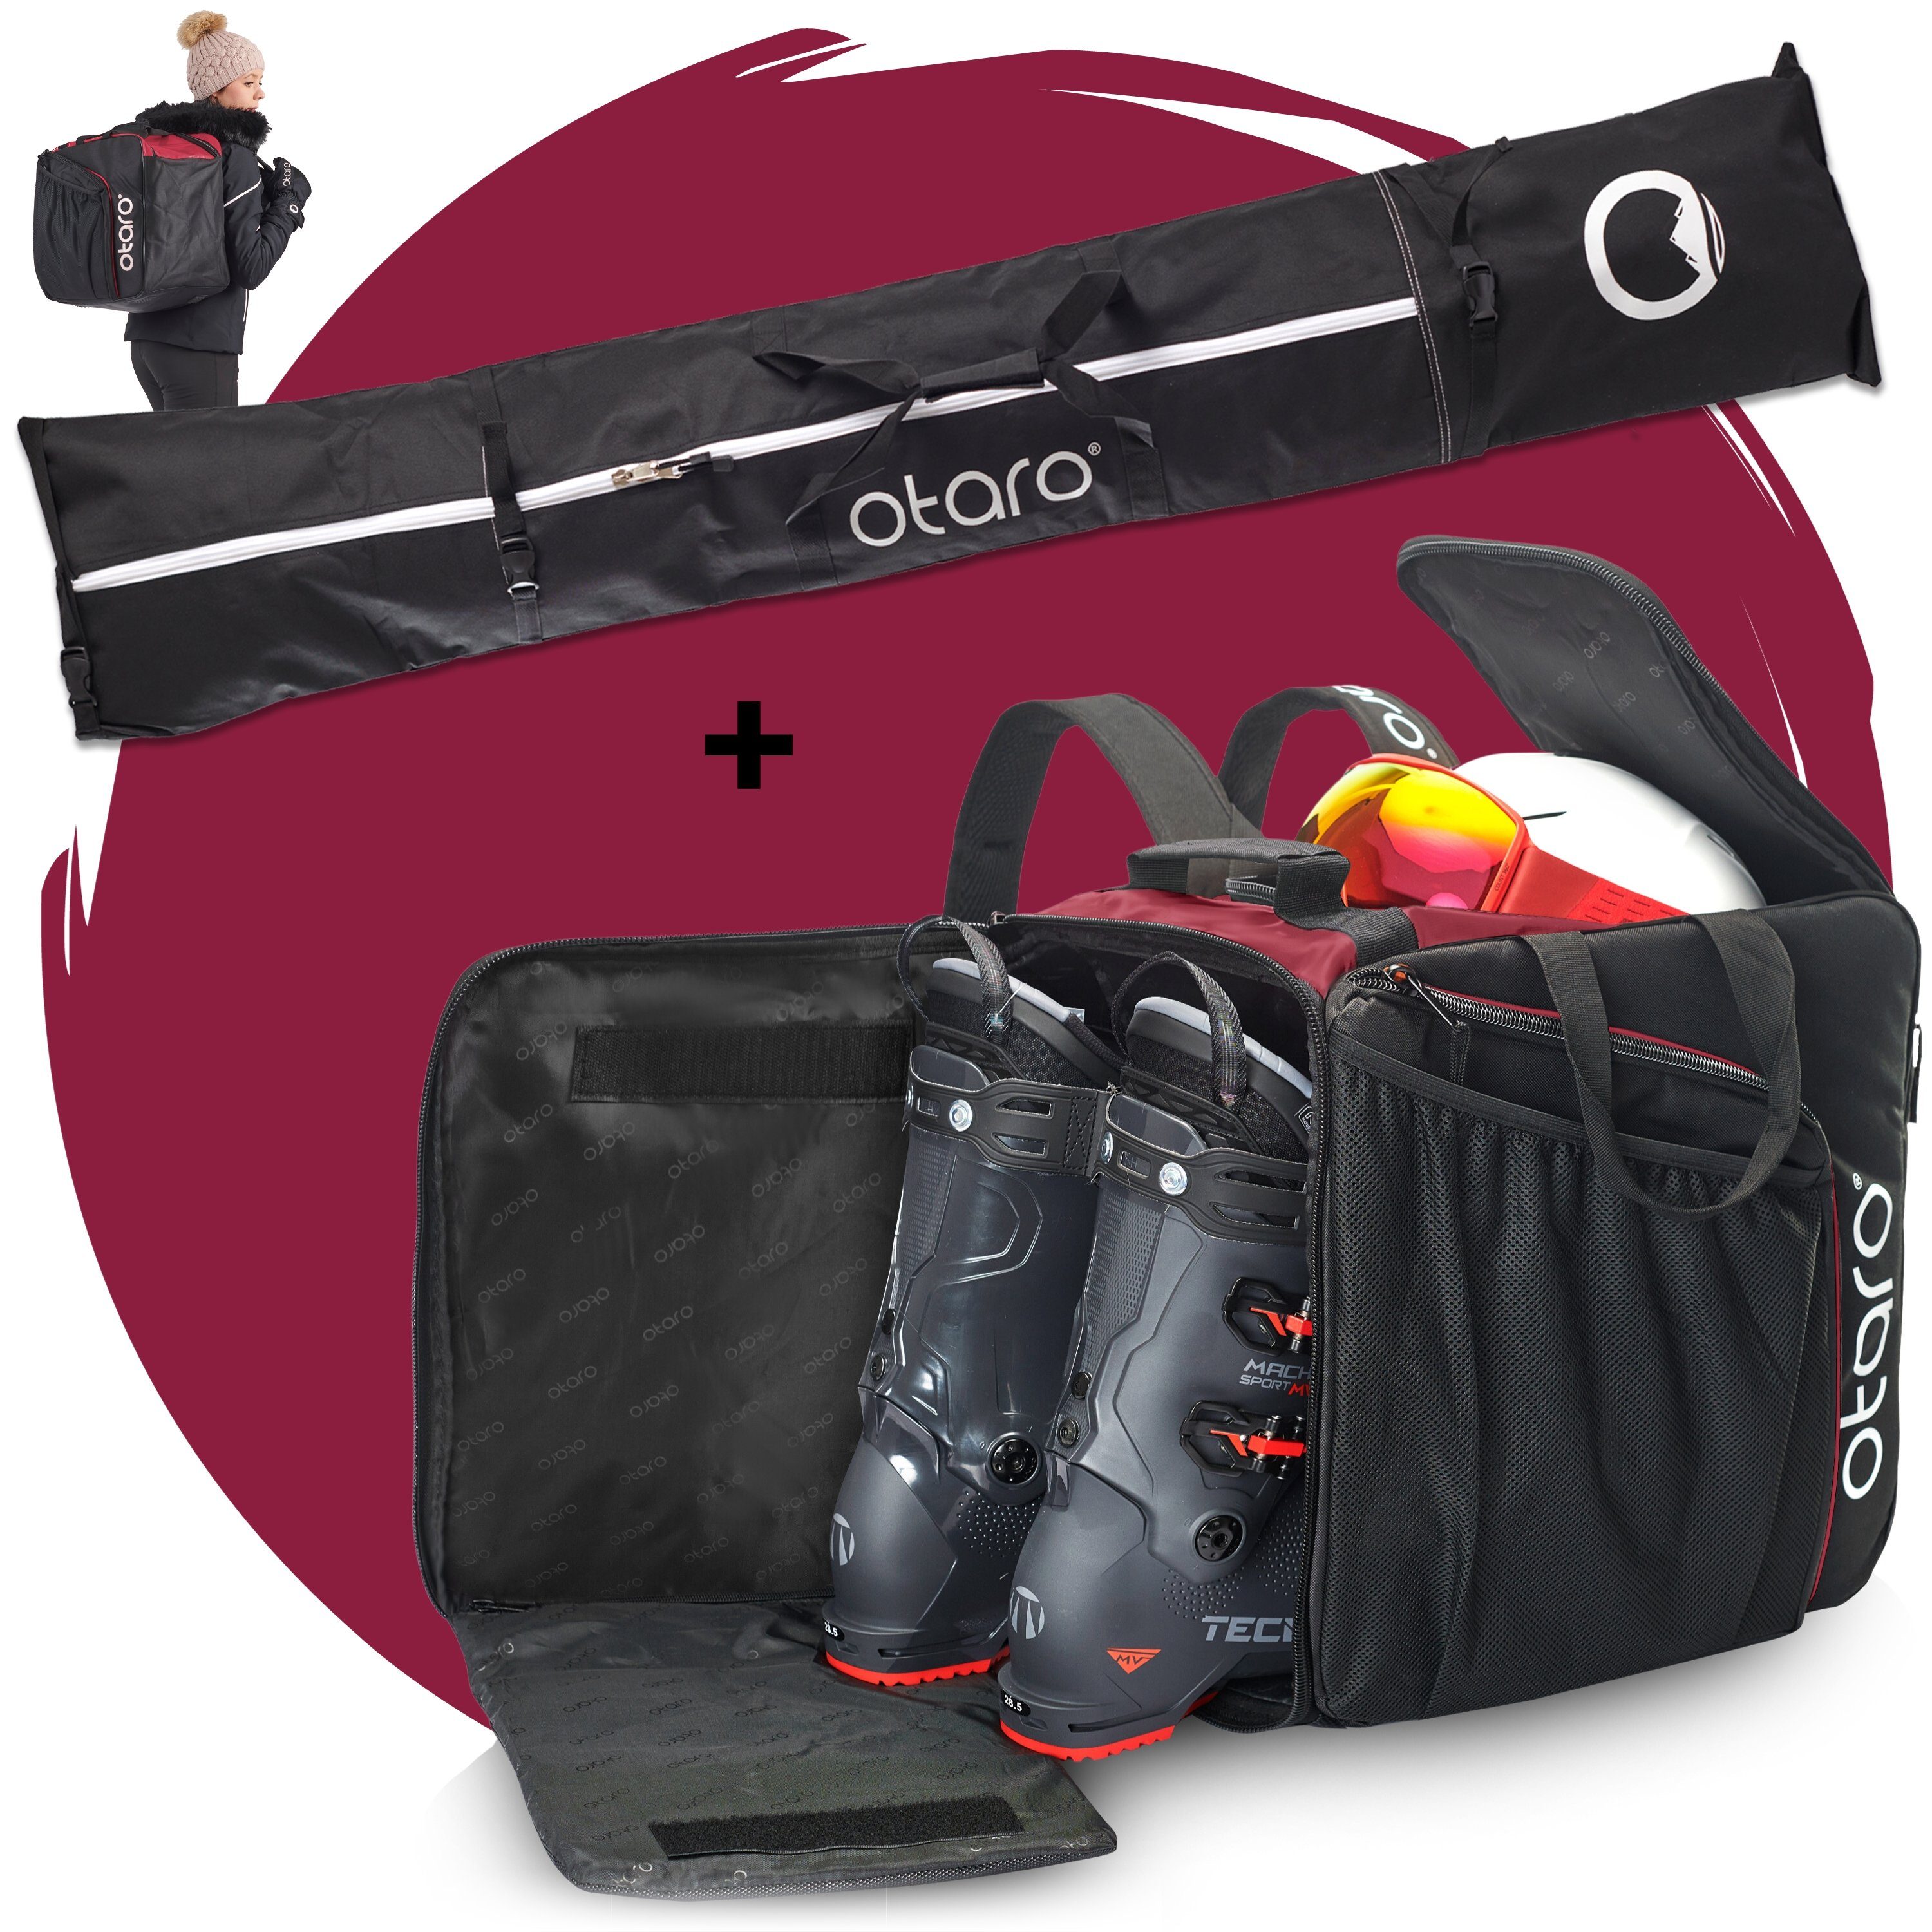 Ski Set: & Otaro Skischuhtasche Stöcke) für Schuhfach Schwarz + deine Paar 2 Standfläche, mit (Schutz Paar für für 2 Skitasche, Pro-Set Ausrüstung, Bordeauxrot Skitasche ausklappbare Ski durchdacht, Perfekt